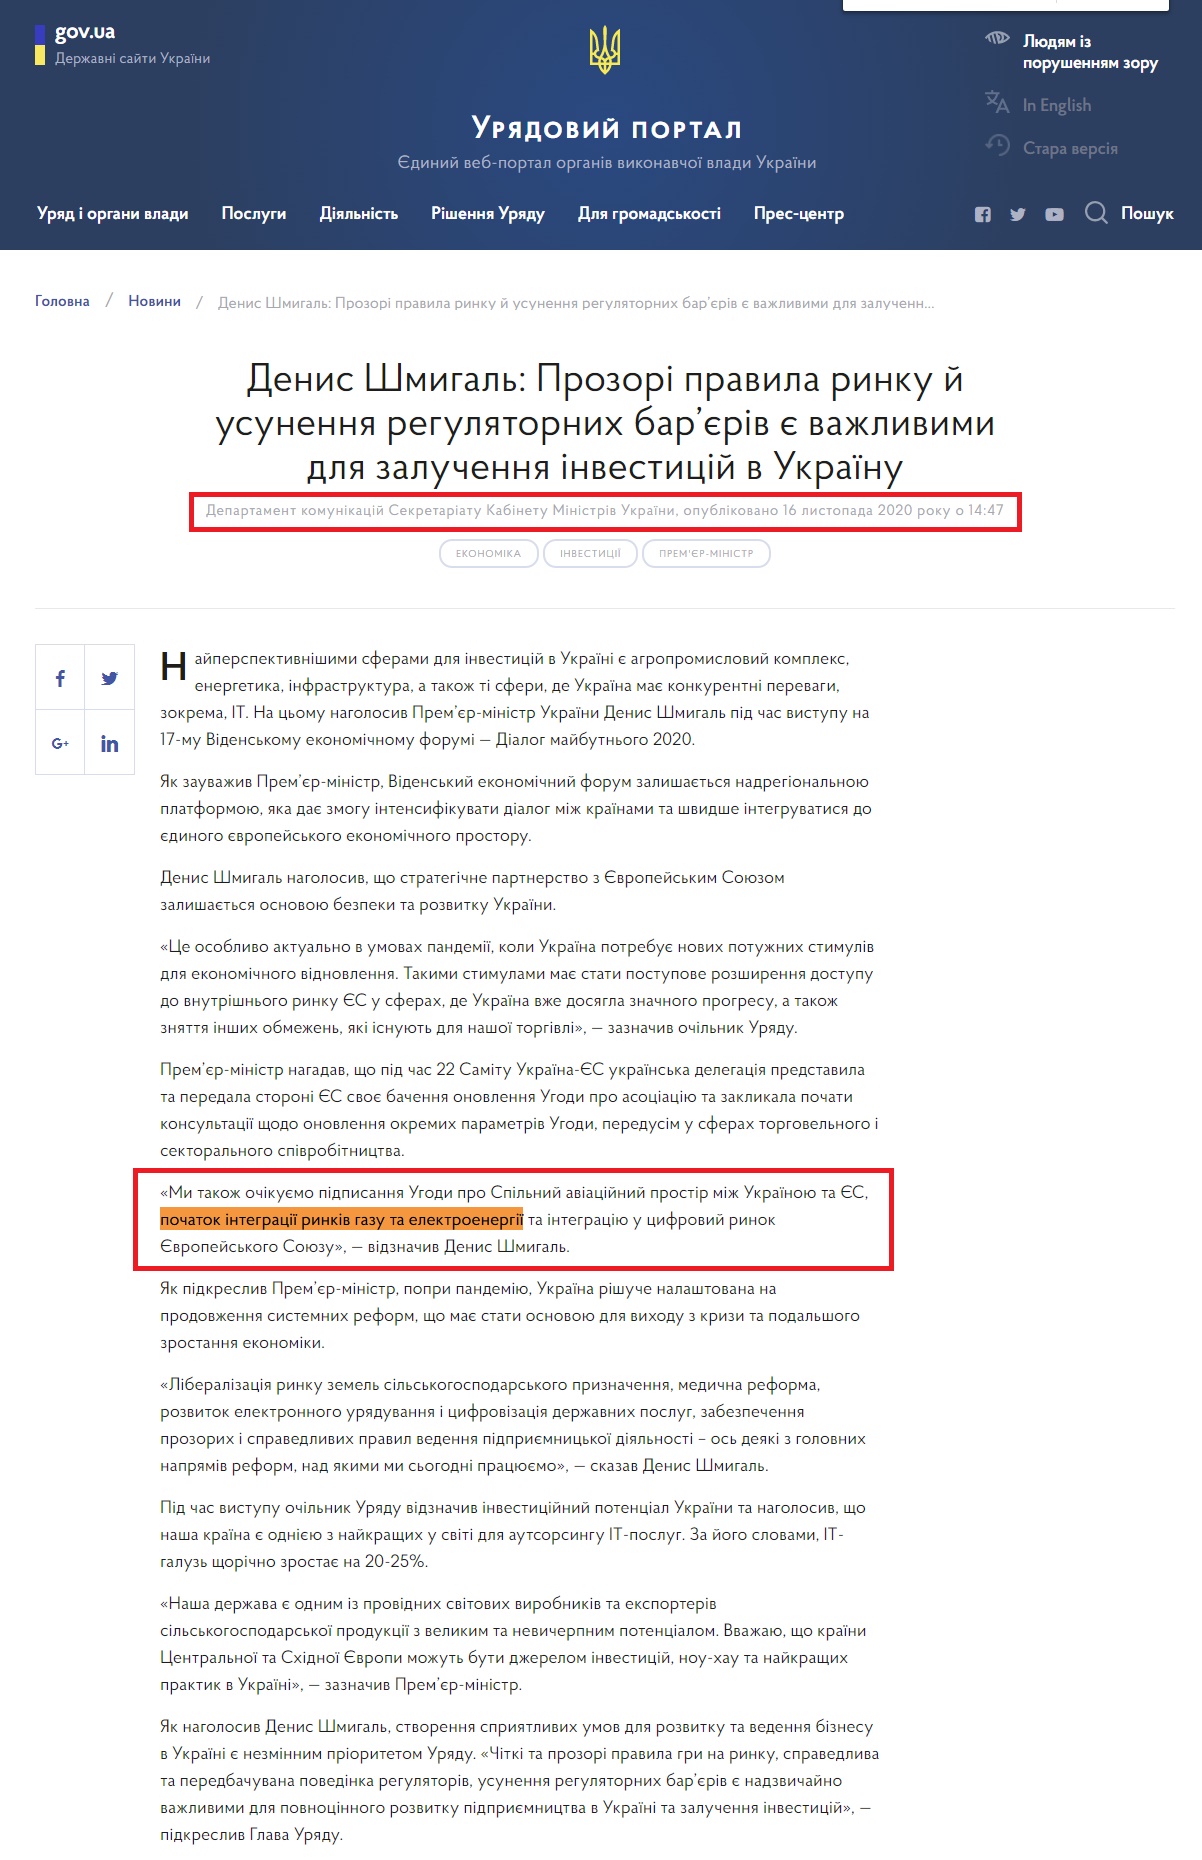 https://www.kmu.gov.ua/news/denis-shmigal-prozori-pravila-rinku-j-usunennya-regulyatornih-baryeriv-ye-vazhlivimi-dlya-zaluchennya-investicij-v-ukrayinu